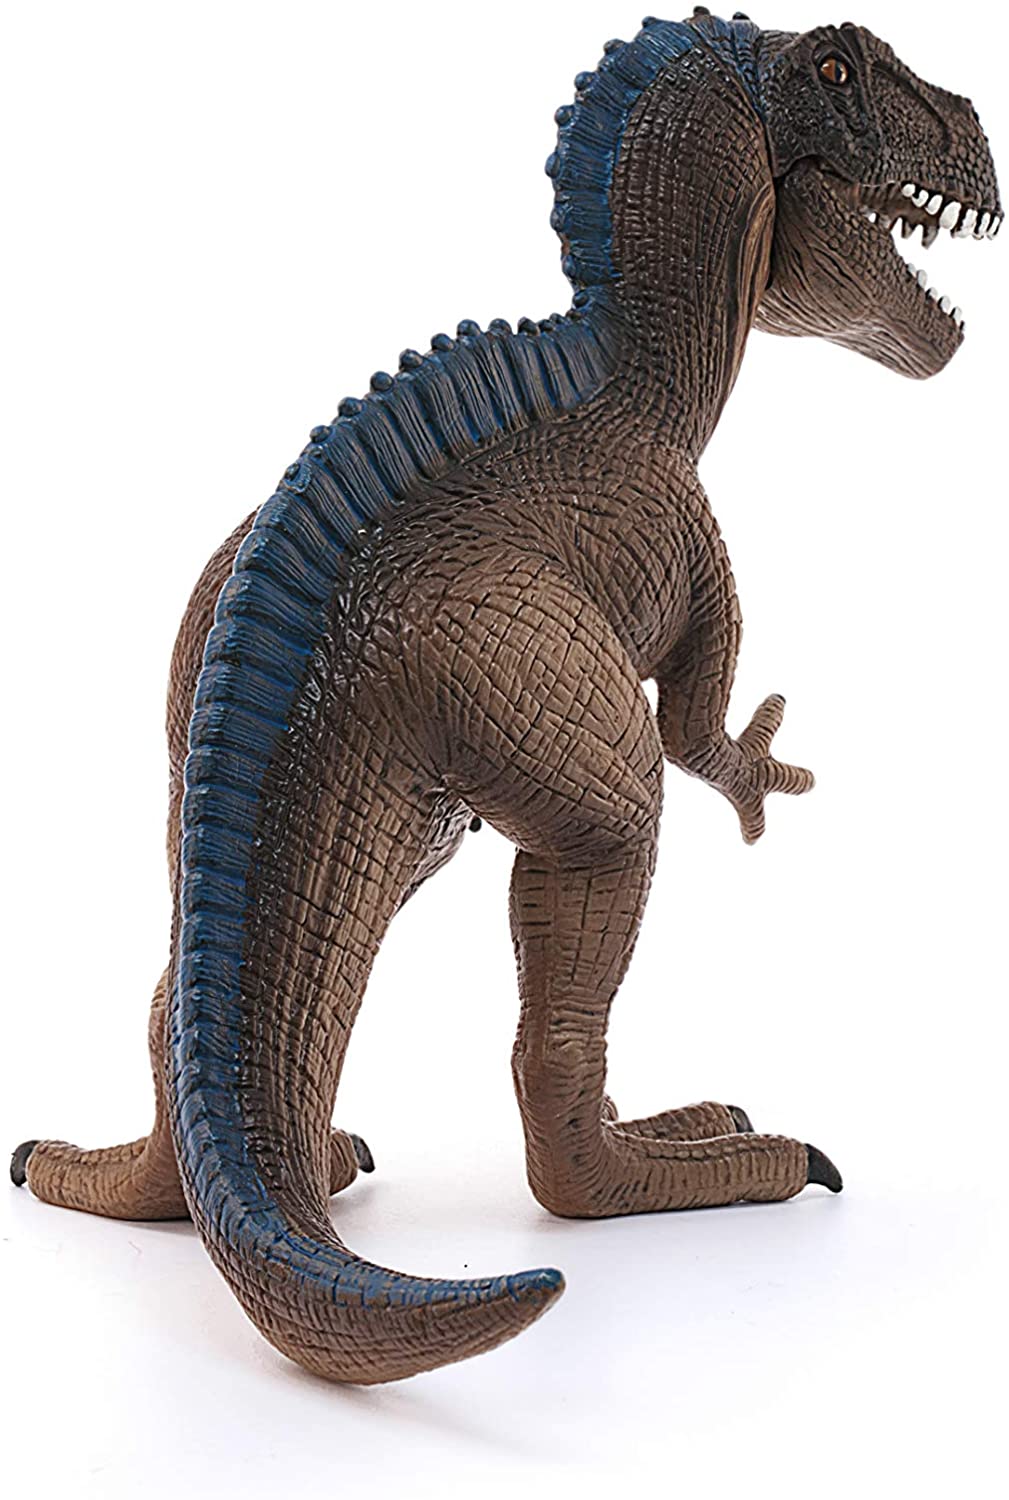 Schleich Acrocanthosaurus Dinosaur Toy Figurine